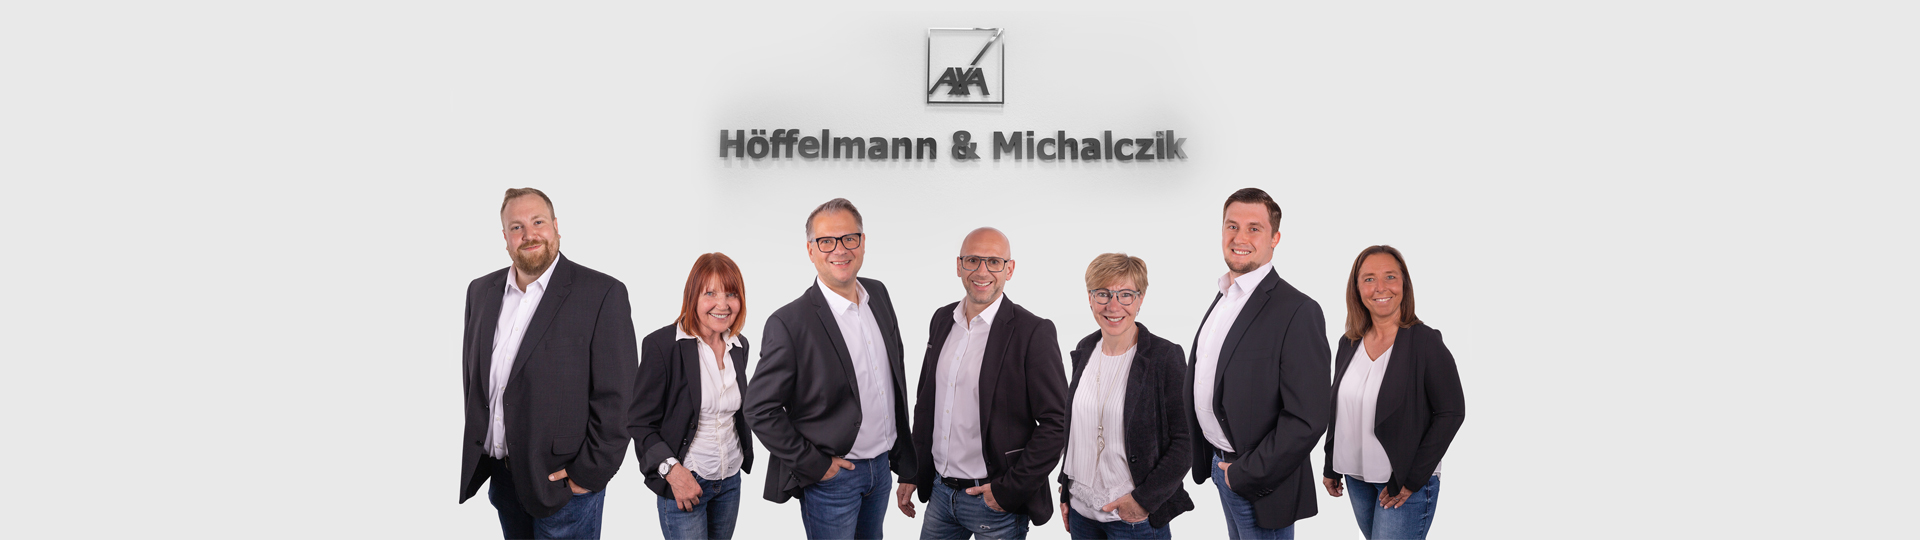 DBV Deutsche Beamtenversicherung Spezialist für den Öffentlichen Dienst Höffelmann & Michalczik aus Recklinghausen